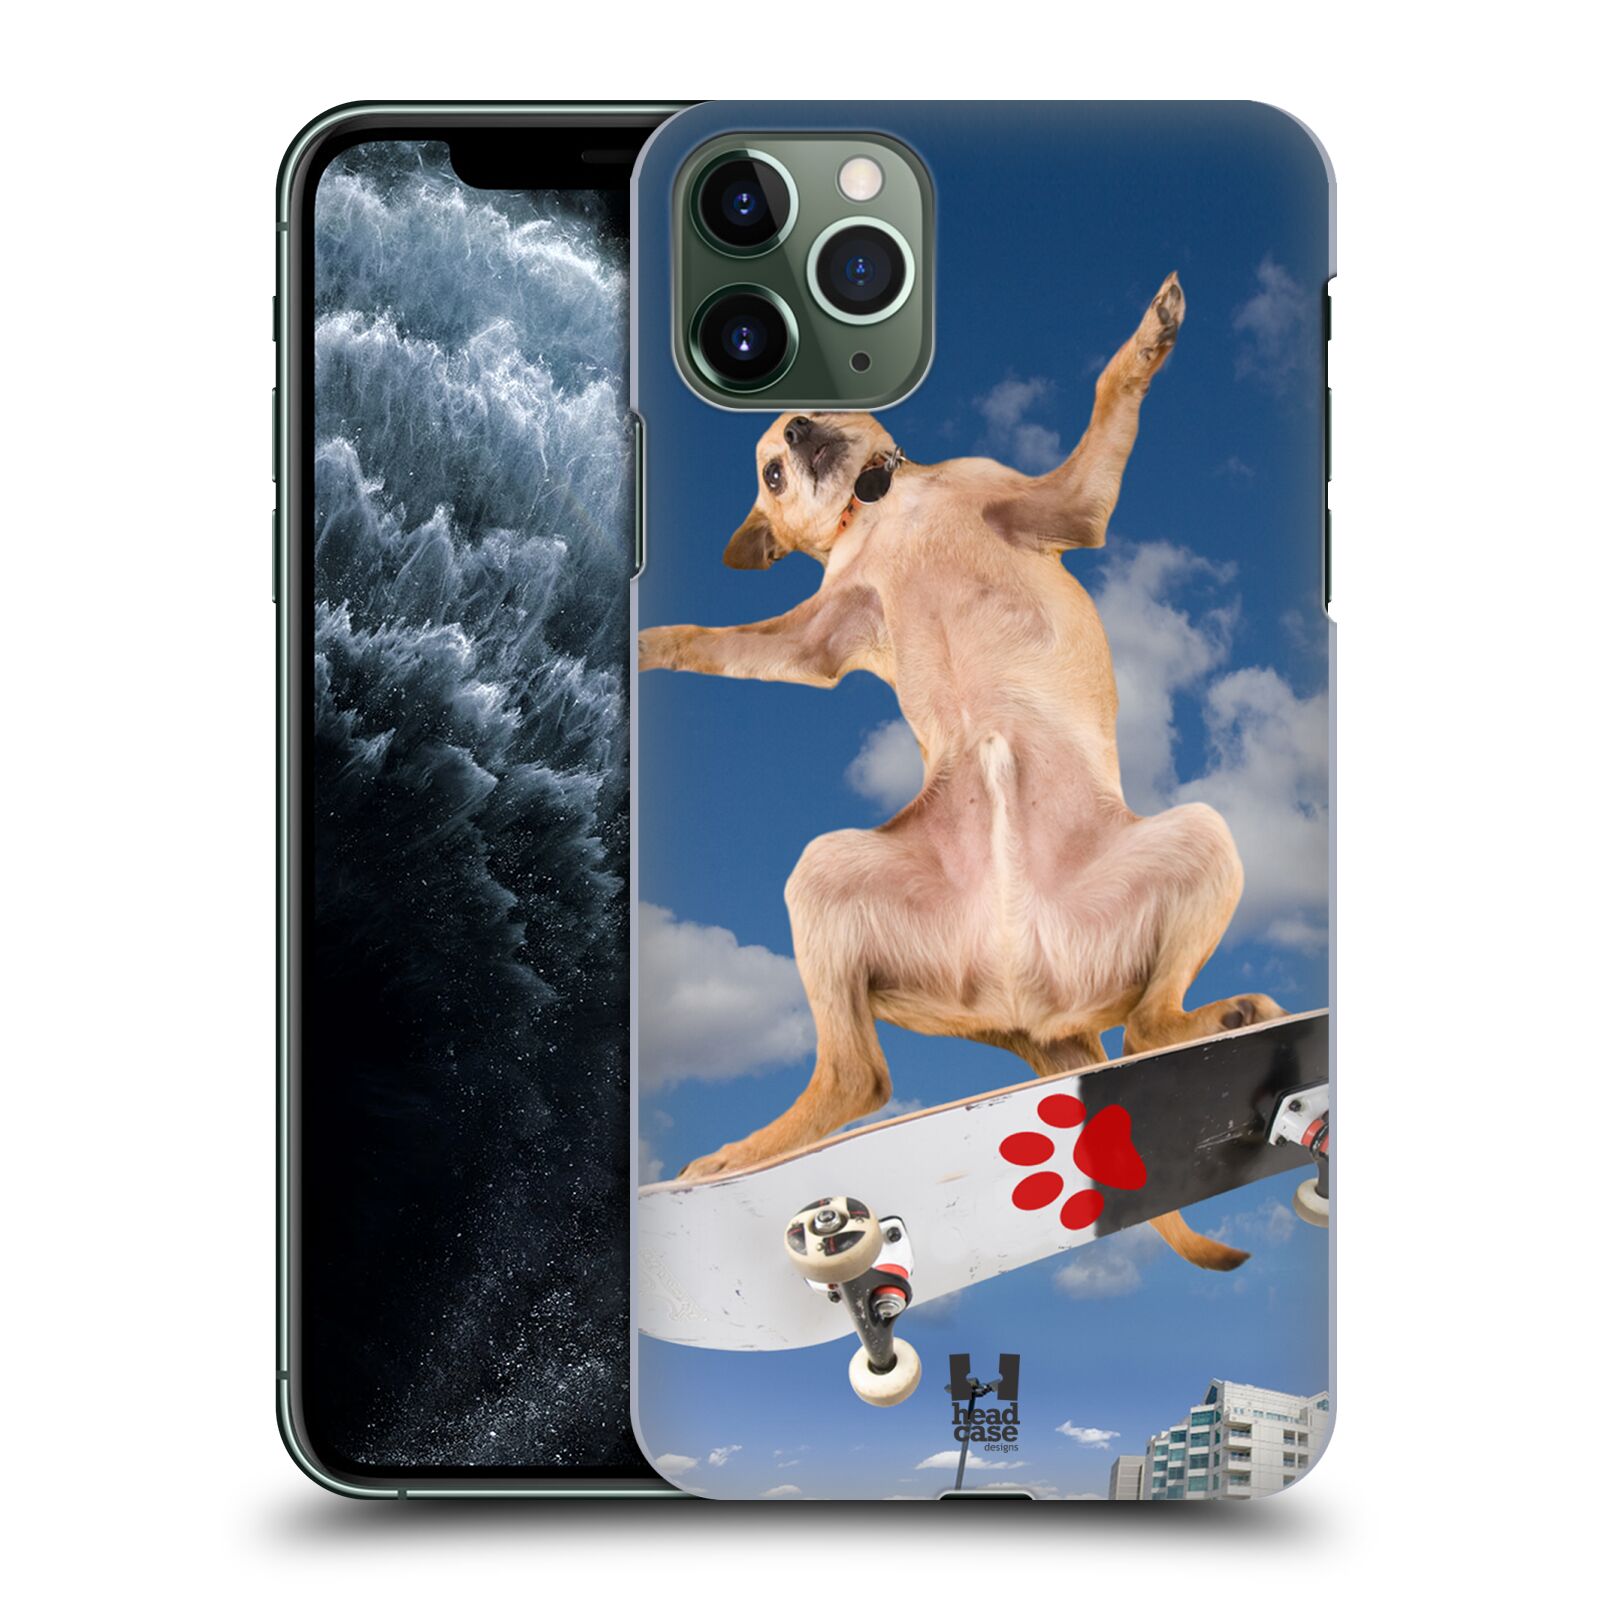 Pouzdro na mobil Apple Iphone 11 PRO MAX - HEAD CASE - vzor Legrační zvířátka pejsek skateboard